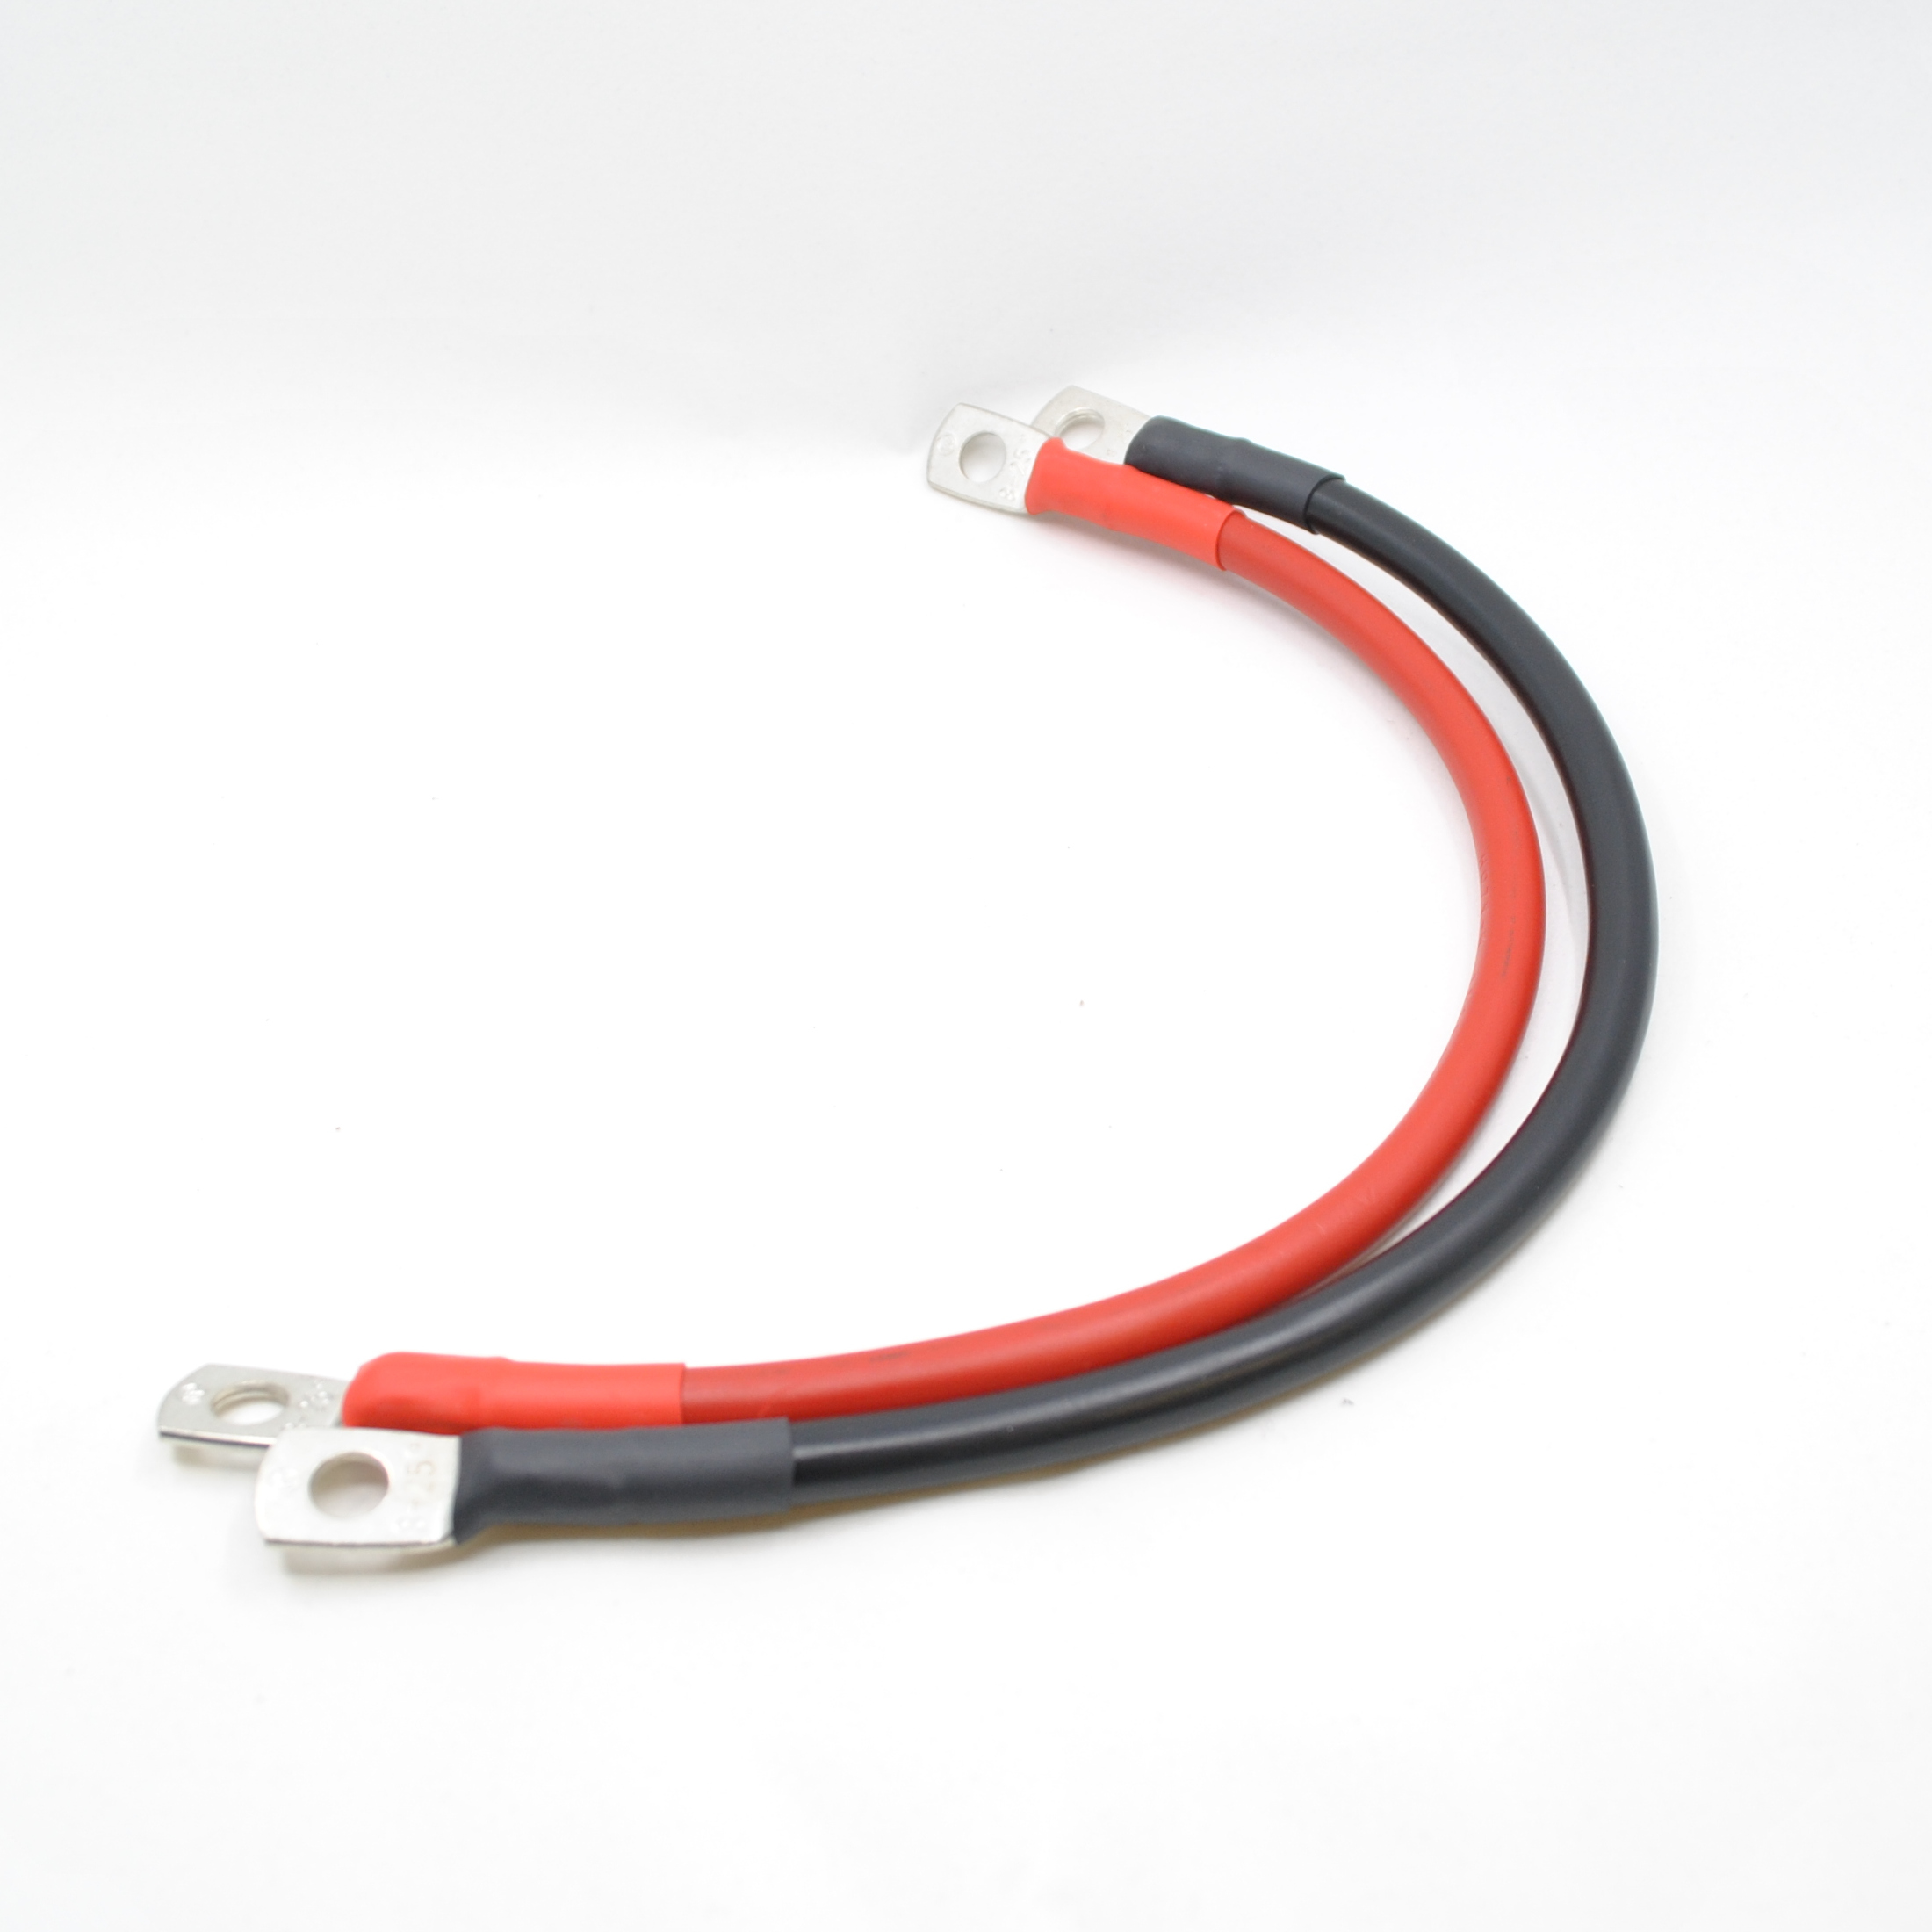 Kabel 5m in rot und 35mm2 Pressösen M8 konfektioniert